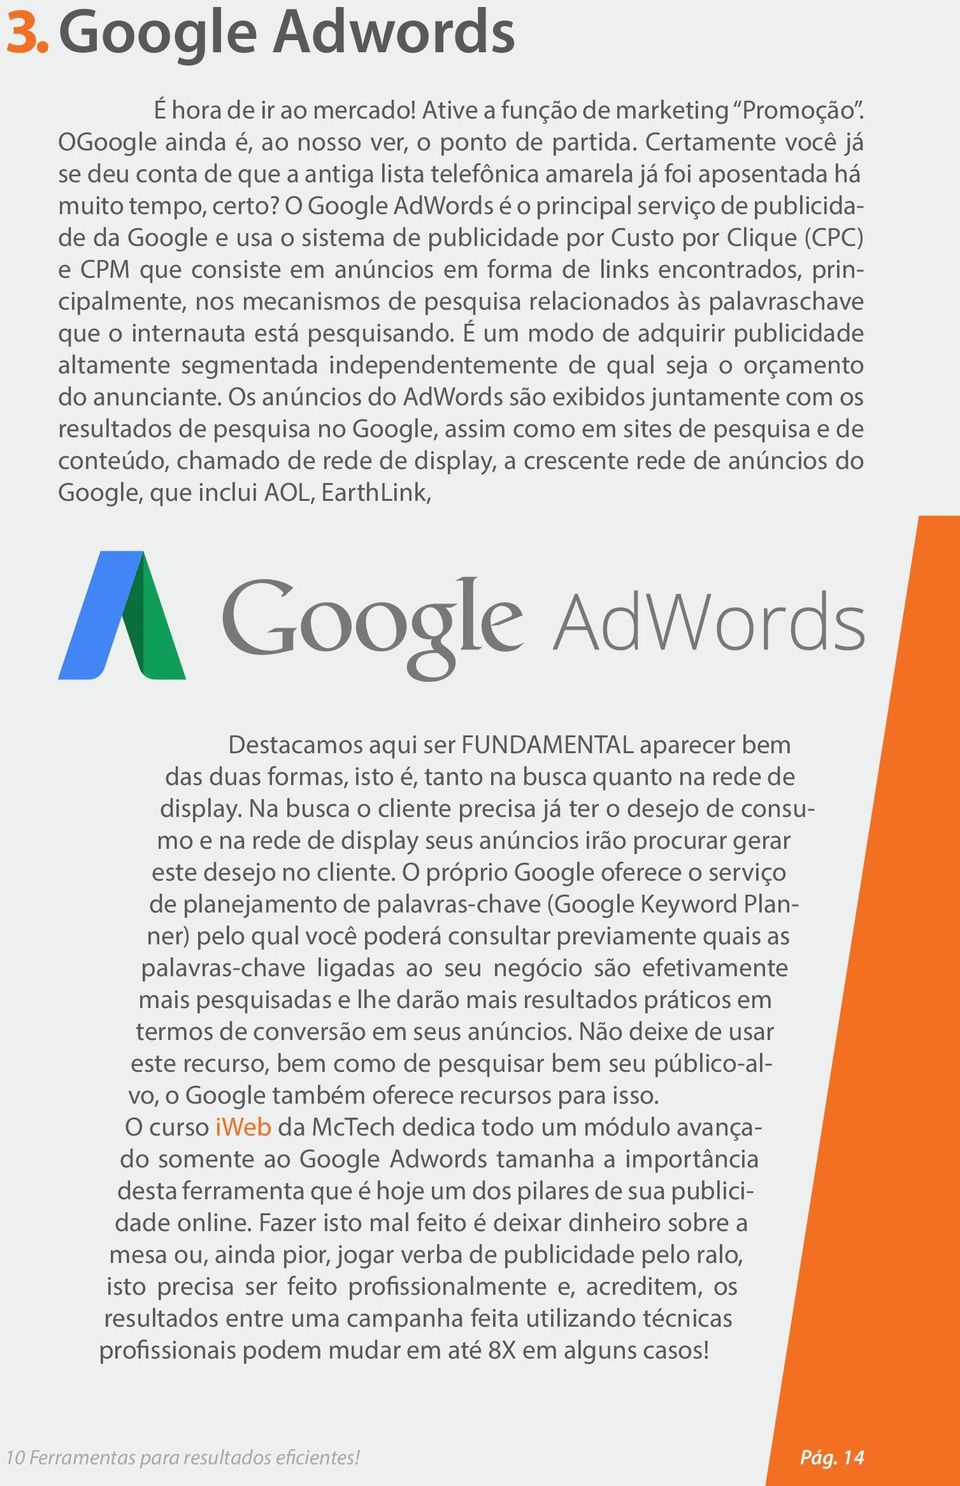 O Google AdWords é o principal serviço de publicidade da Google e usa o sistema de publicidade por Custo por Clique (CPC) e CPM que consiste em anúncios em forma de links encontrados, principalmente,